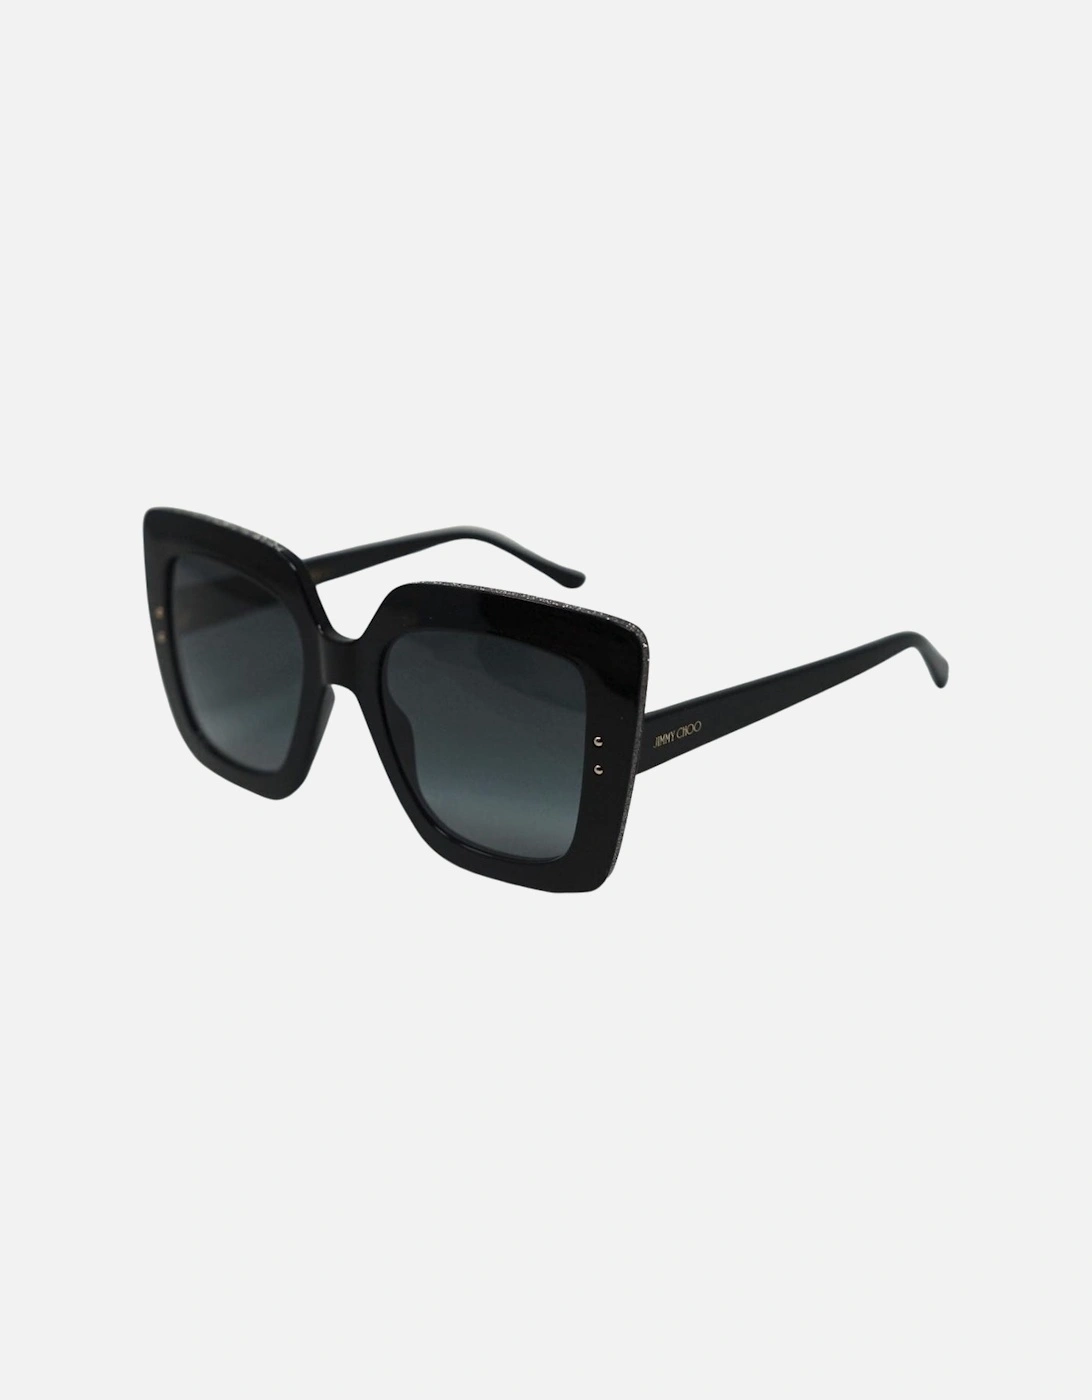 Auri/G/S 0807 90 Black Sunglasses